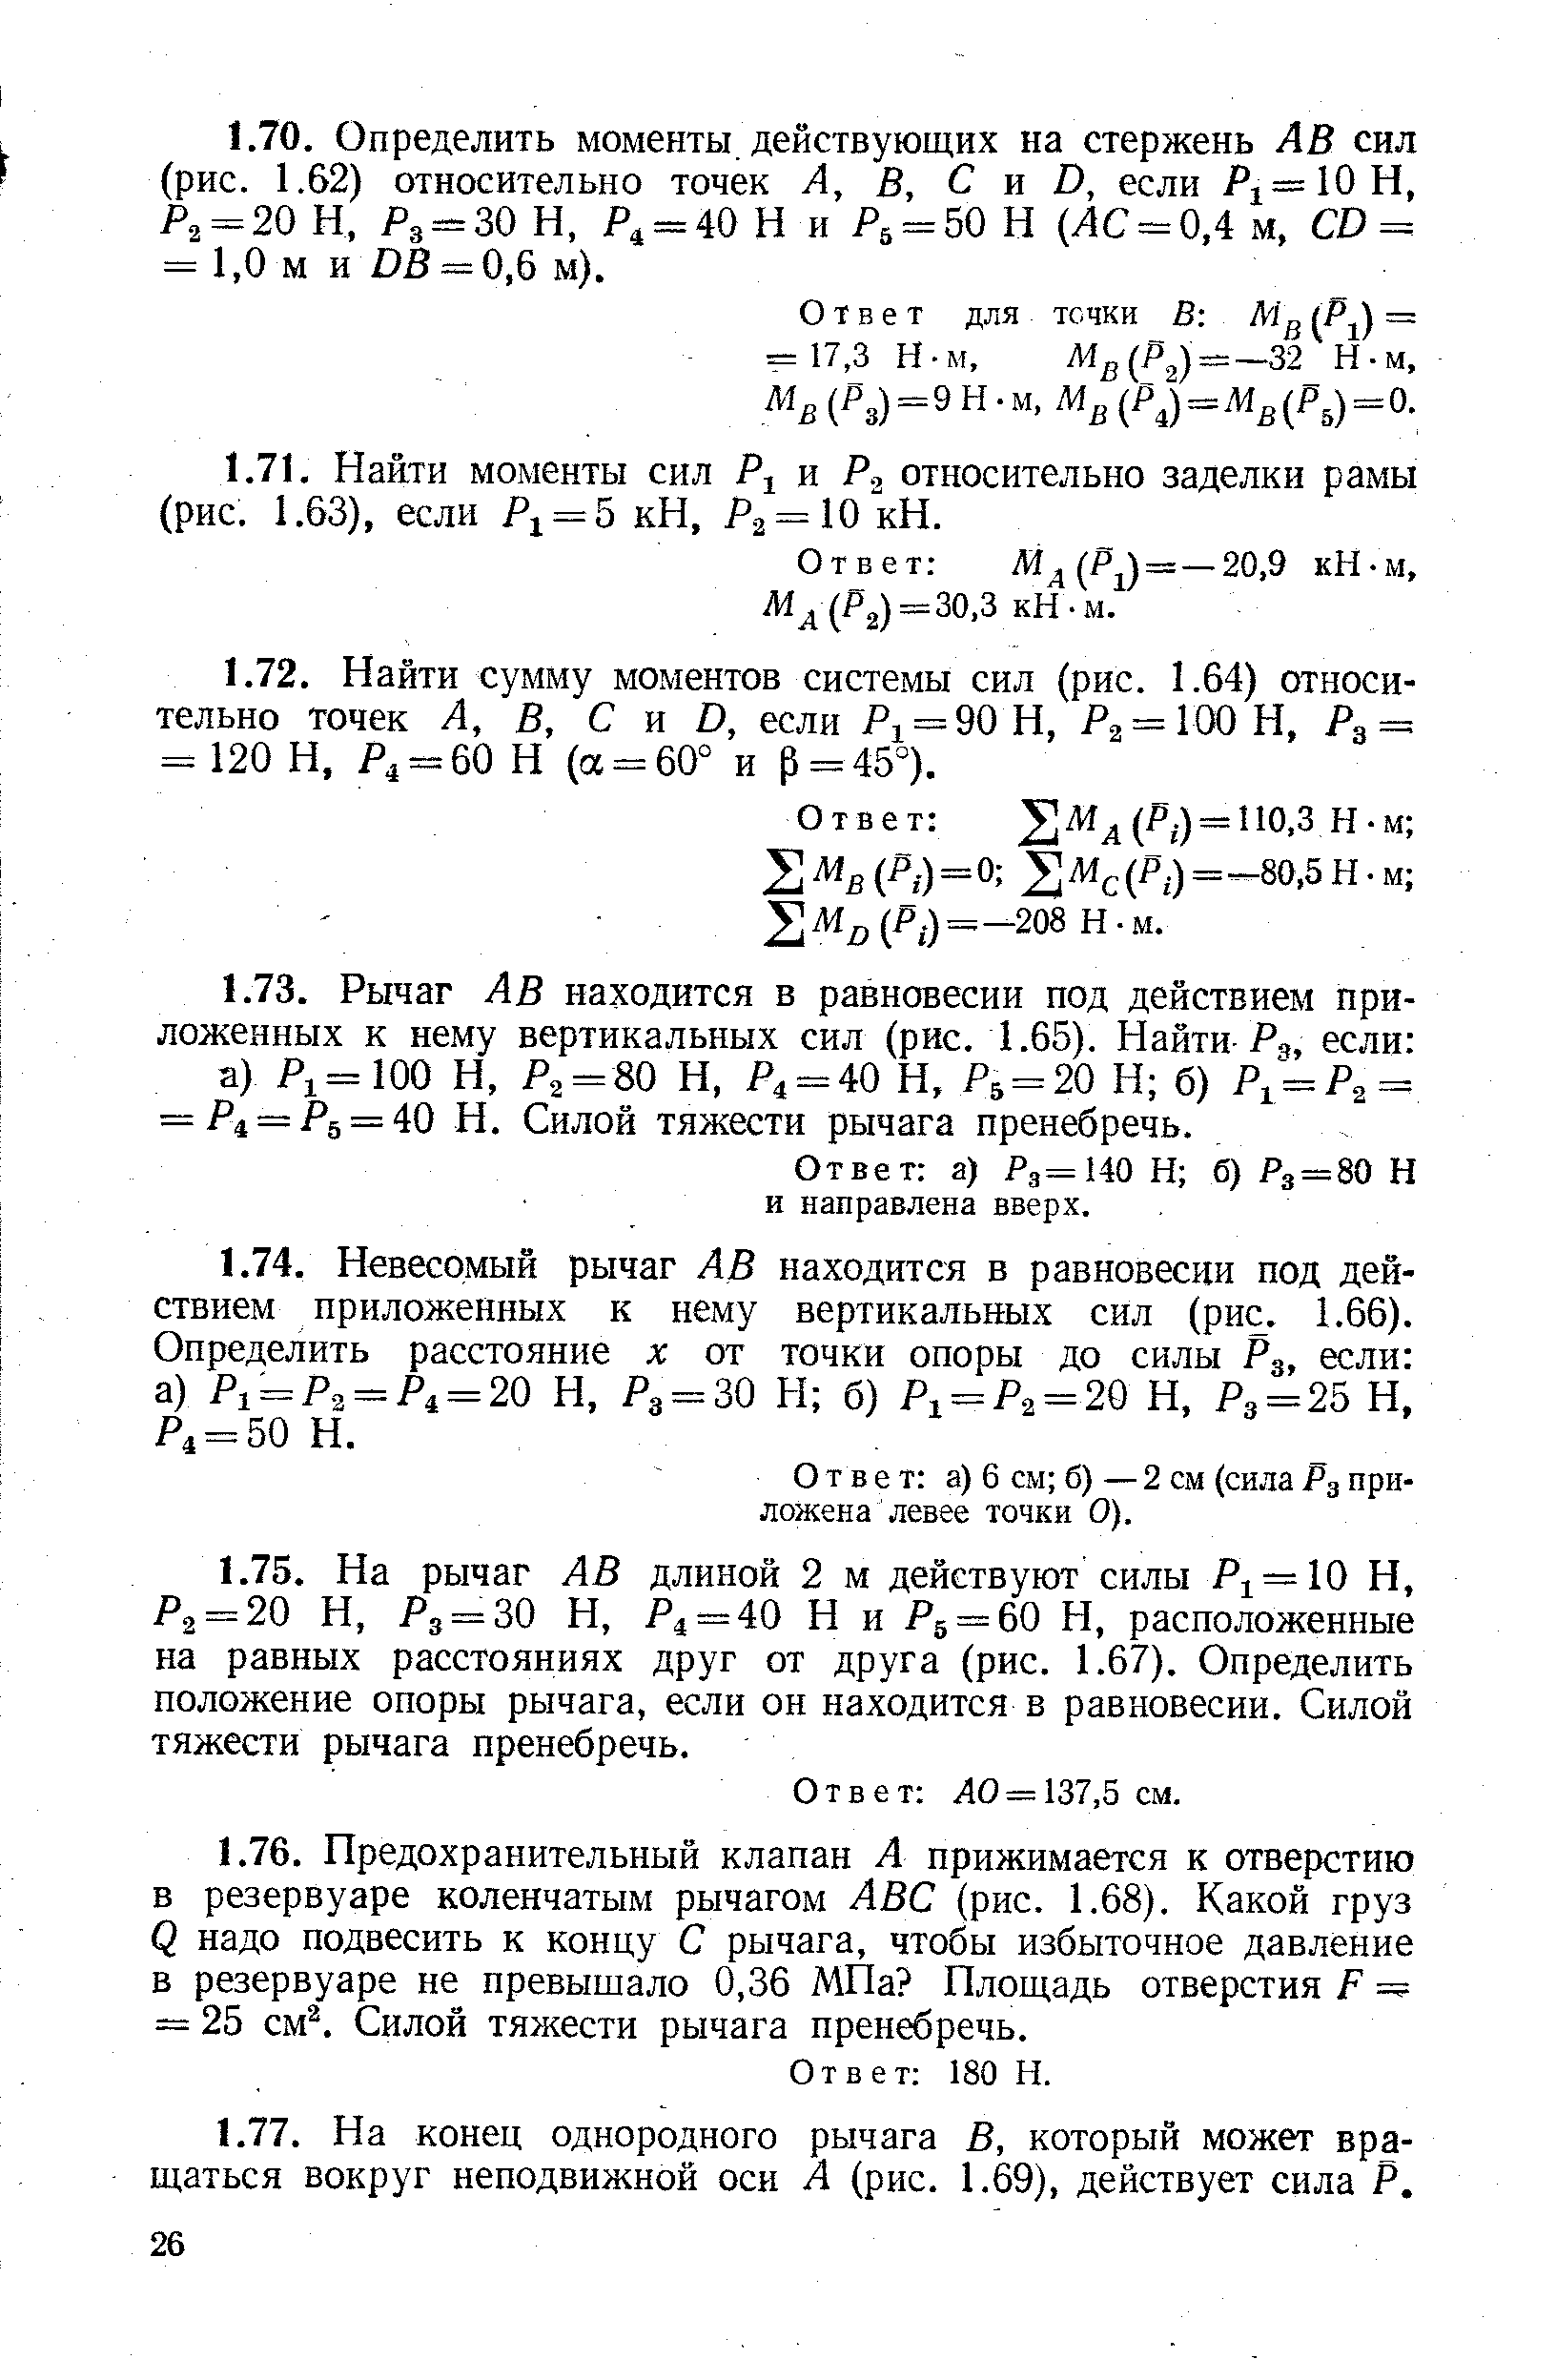 Ответ Жд (Р ) = —20,9 кН-м, Л1д(Р2)=30,3 кН-м.
